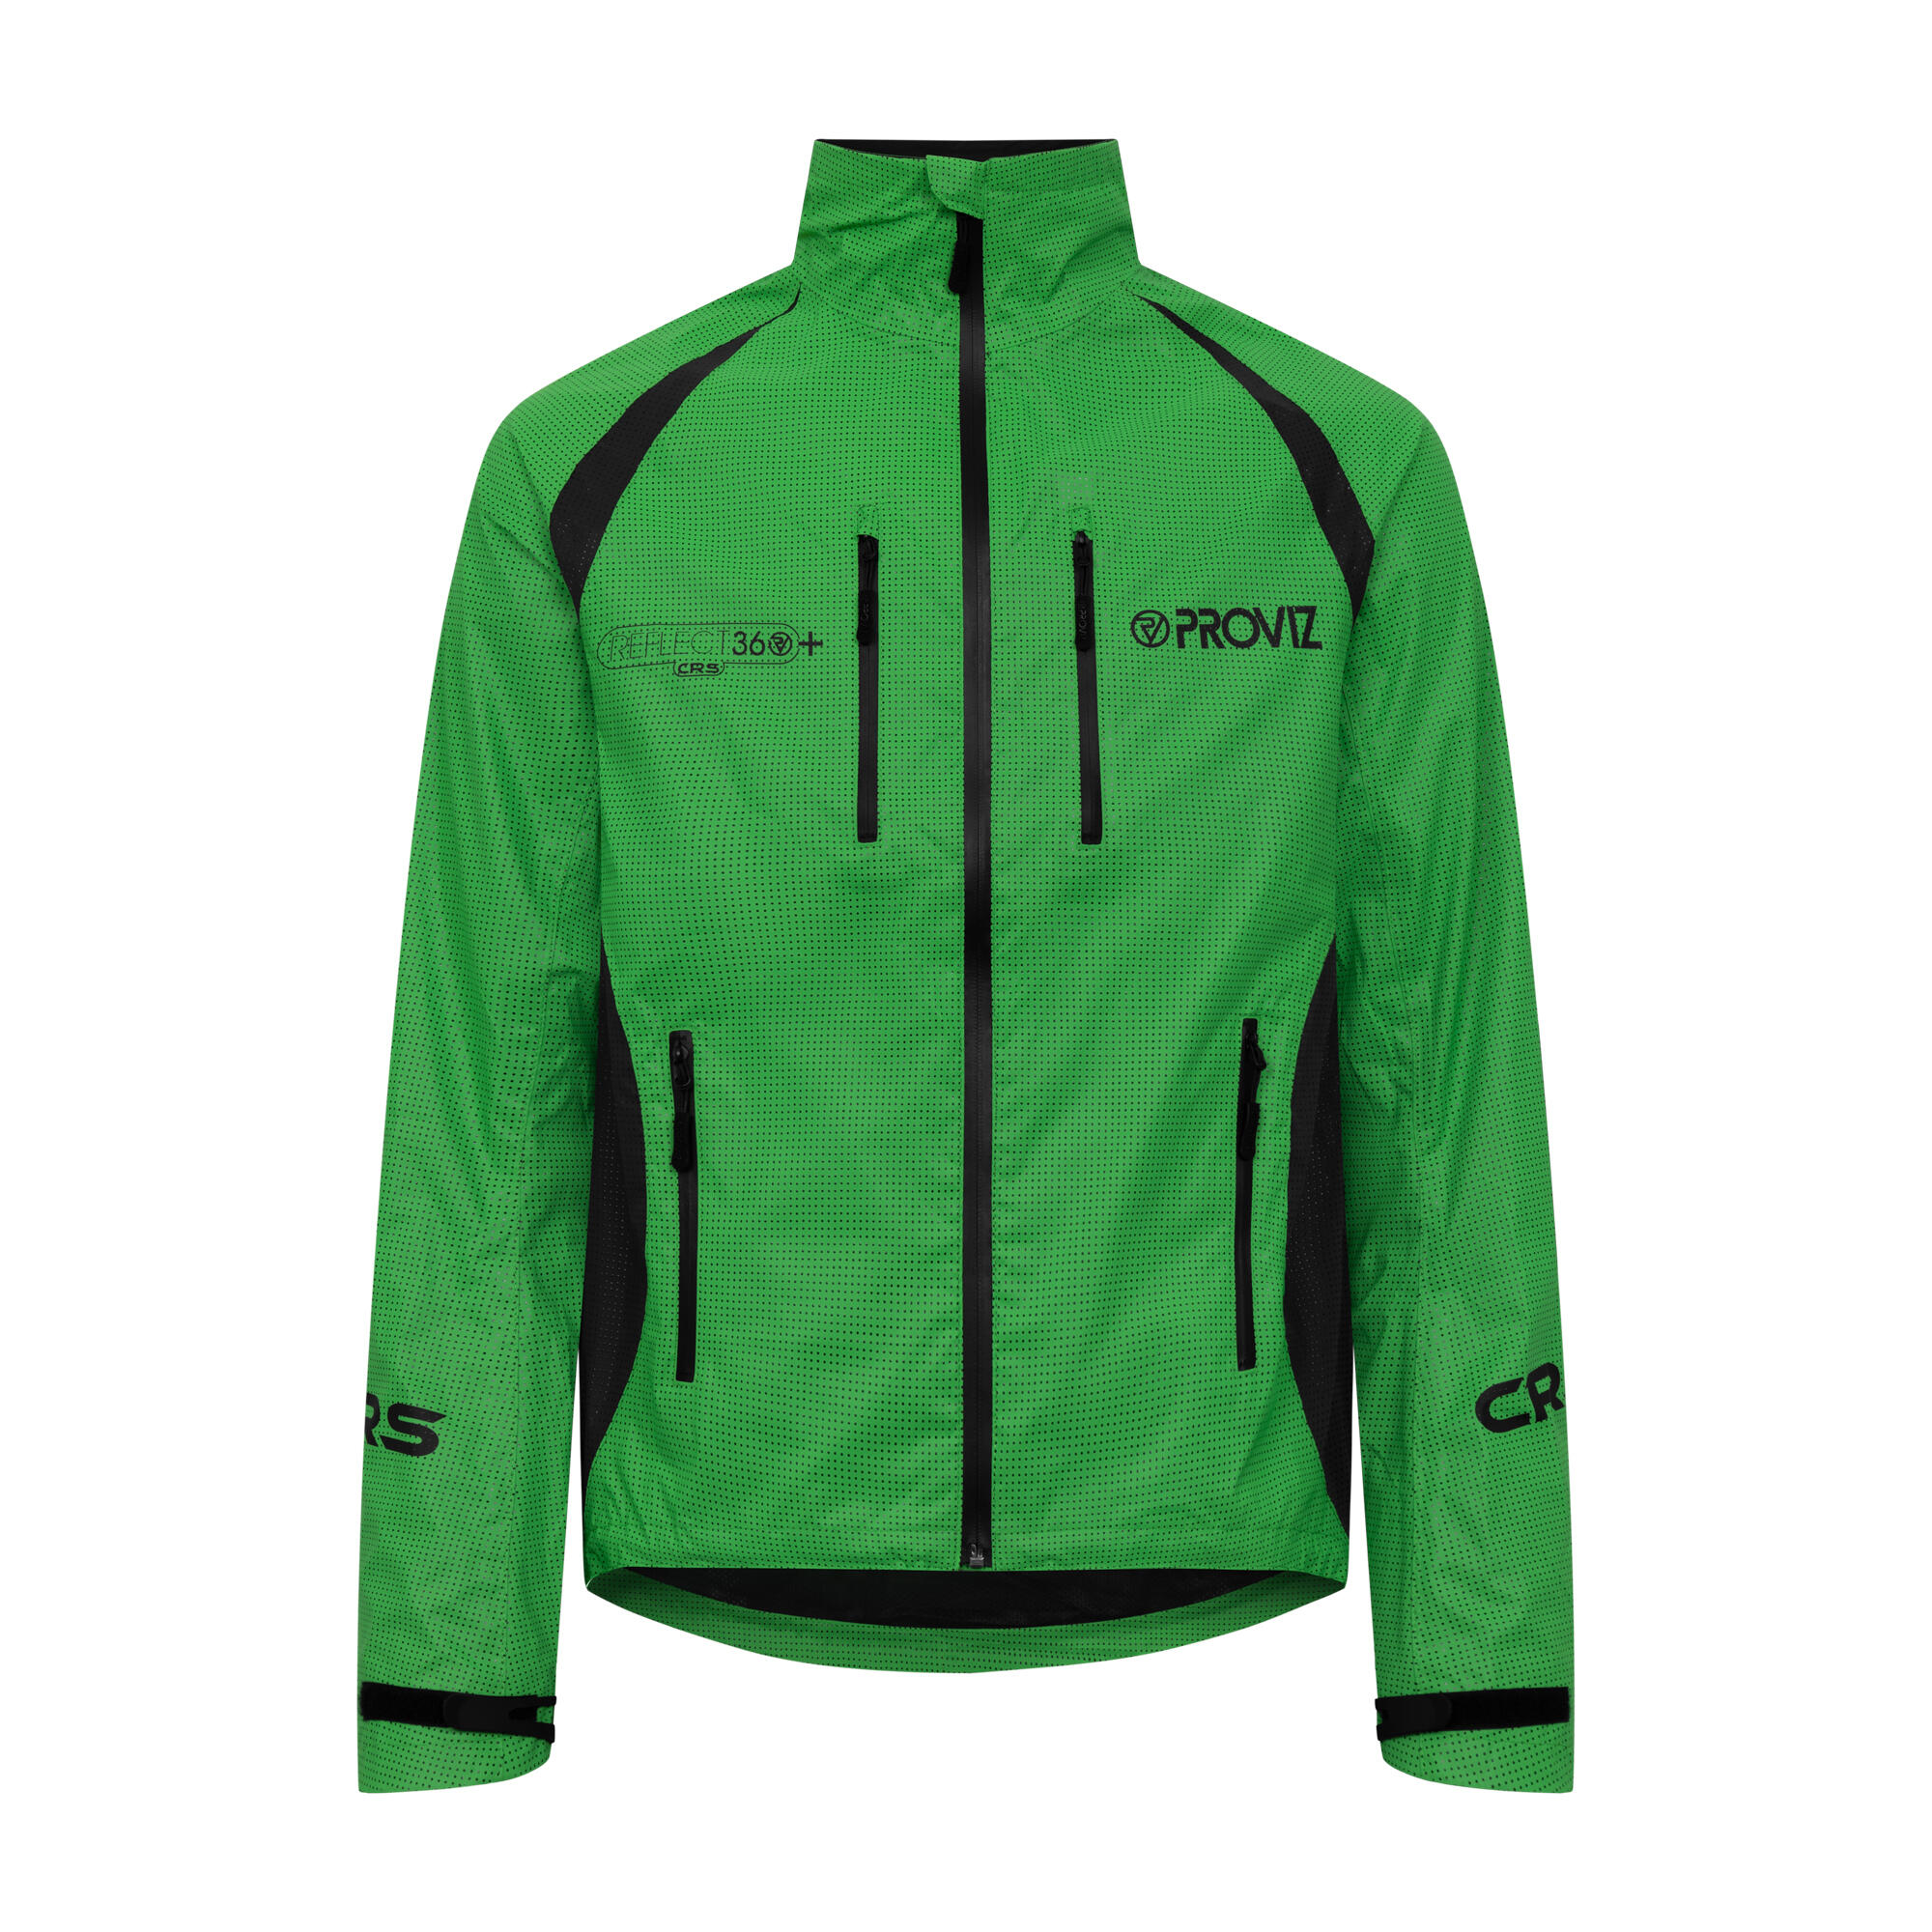 PROVIZ Proviz Men's REFLECT360 CRS Plus Waterproof Reflective Cycling Jacket